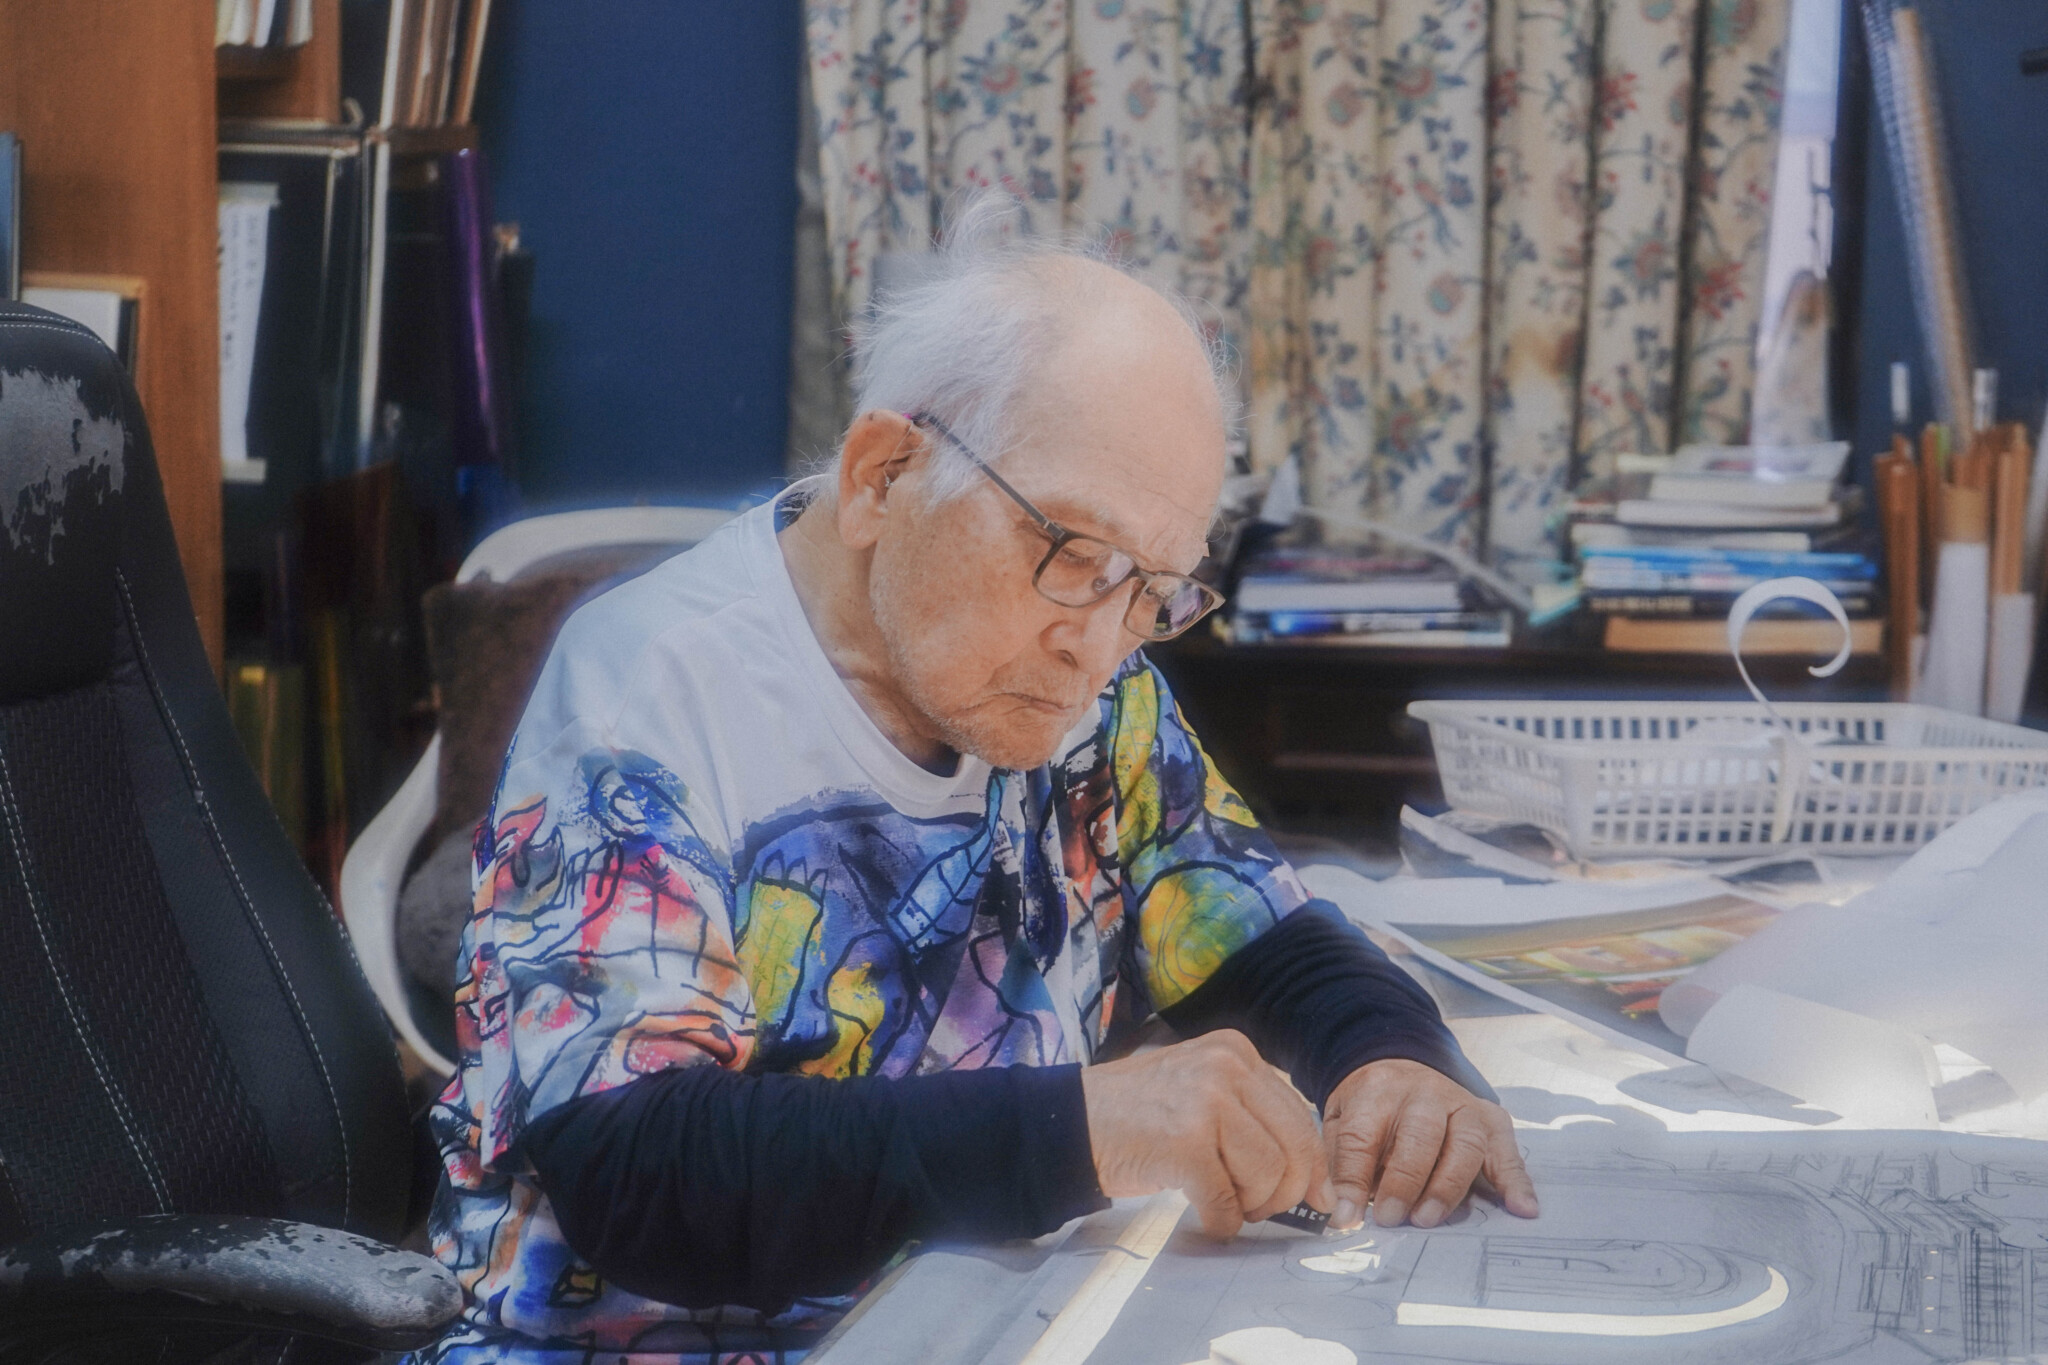 《影絵作家》黒柳徹子さんも影響を受けた、来年100歳を迎える藤城清治さんの遊び心溢れる影絵の世界。「いつまでも、ちょっとしたいたずらごころを忘れずに」ハンドメイドは小宇宙#4